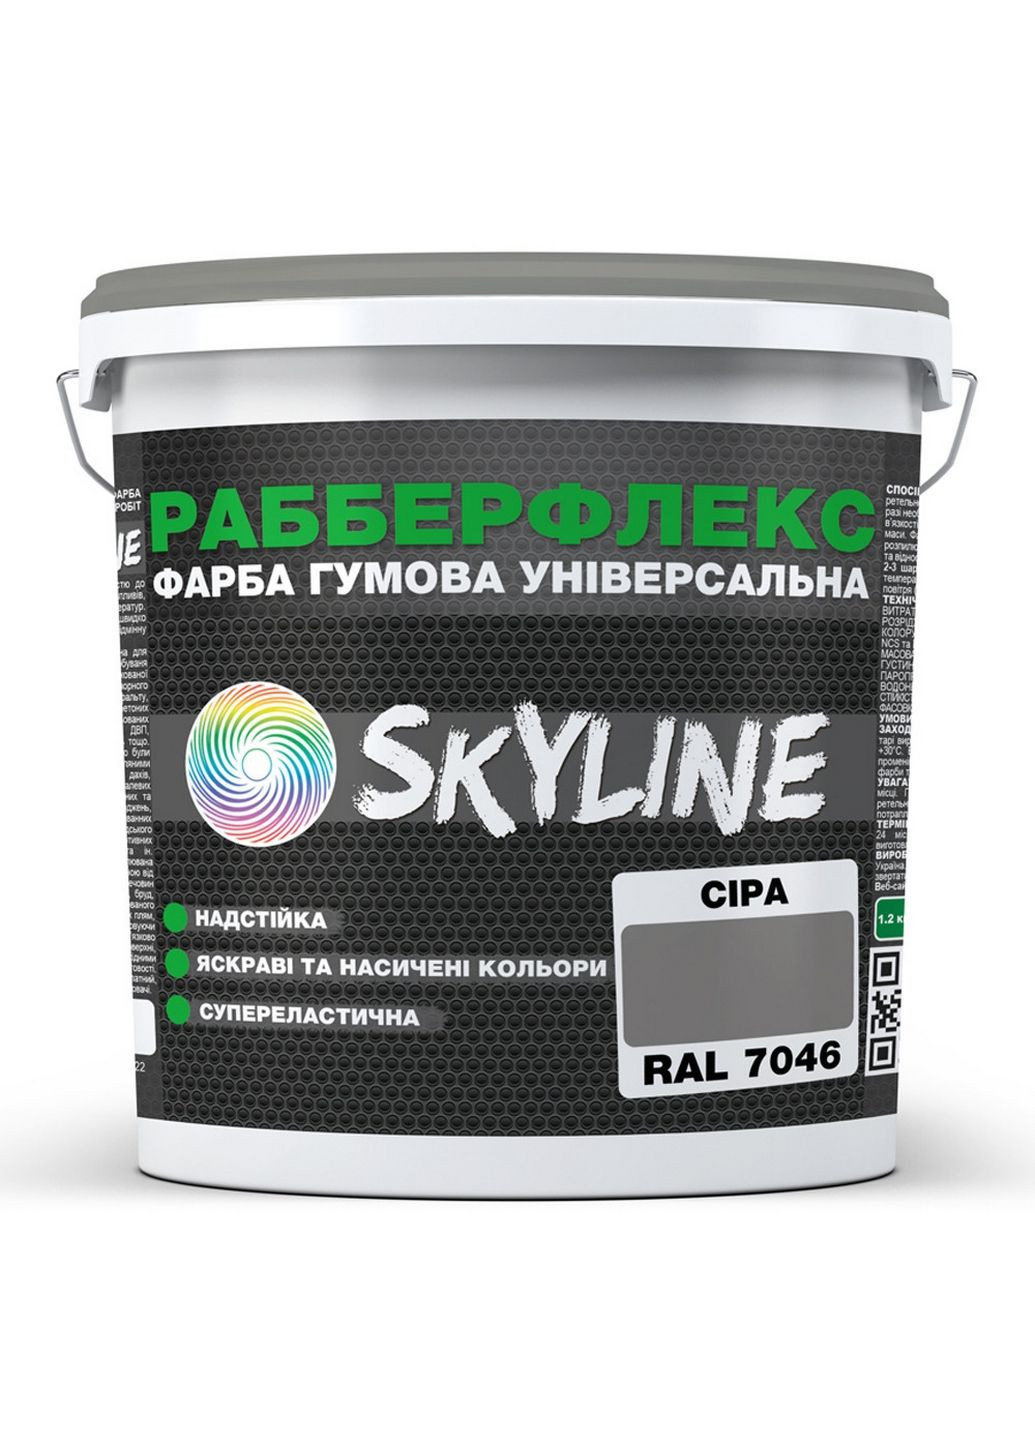 Надстійка фарба гумова супереластична «РабберФлекс» 12 кг SkyLine (289461308)